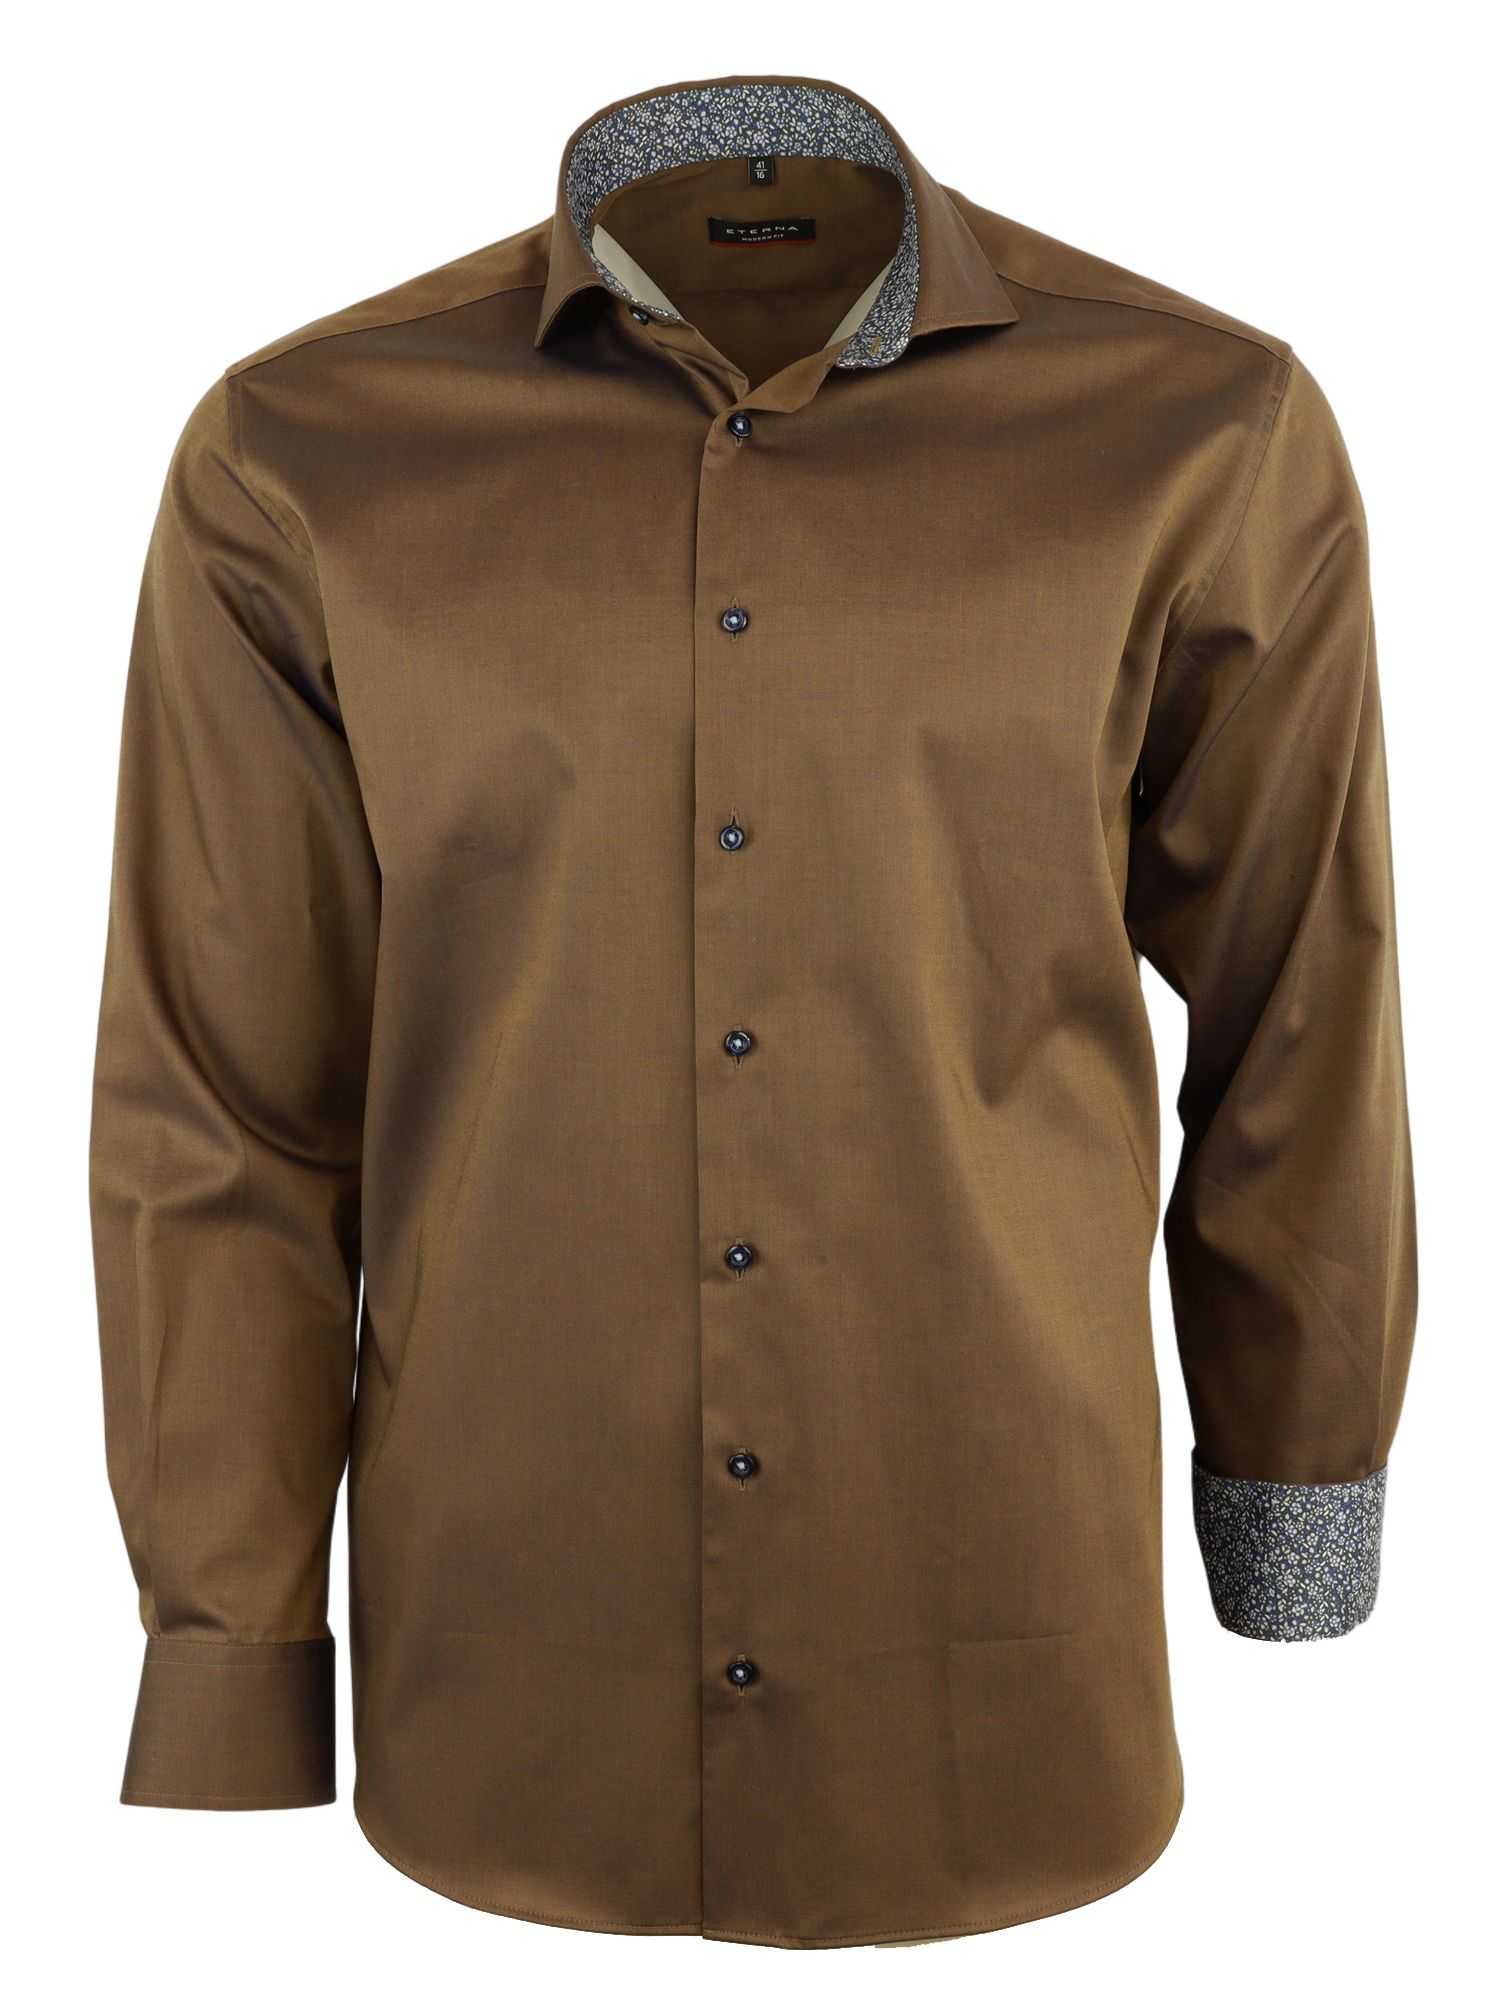 Мужская рубашка ETERNA, коричневая, цвет коричневый, размер 44 - фото 1